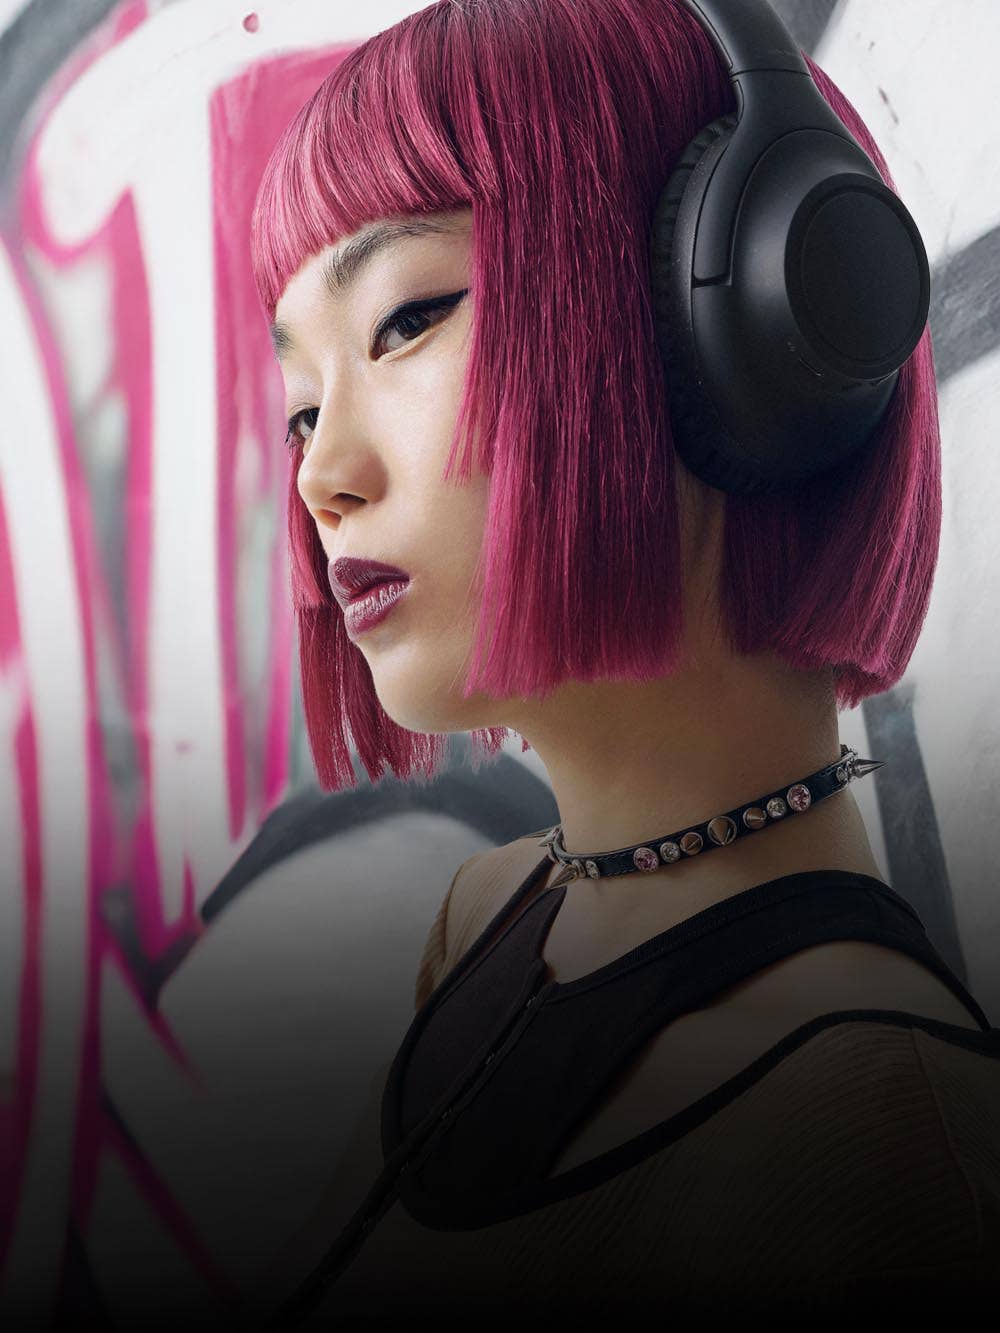 Audio-Technica anuncia los auriculares inalámbricos de mayor rendimiento hasta la fecha, con una increíble autonomía de 90 horas 